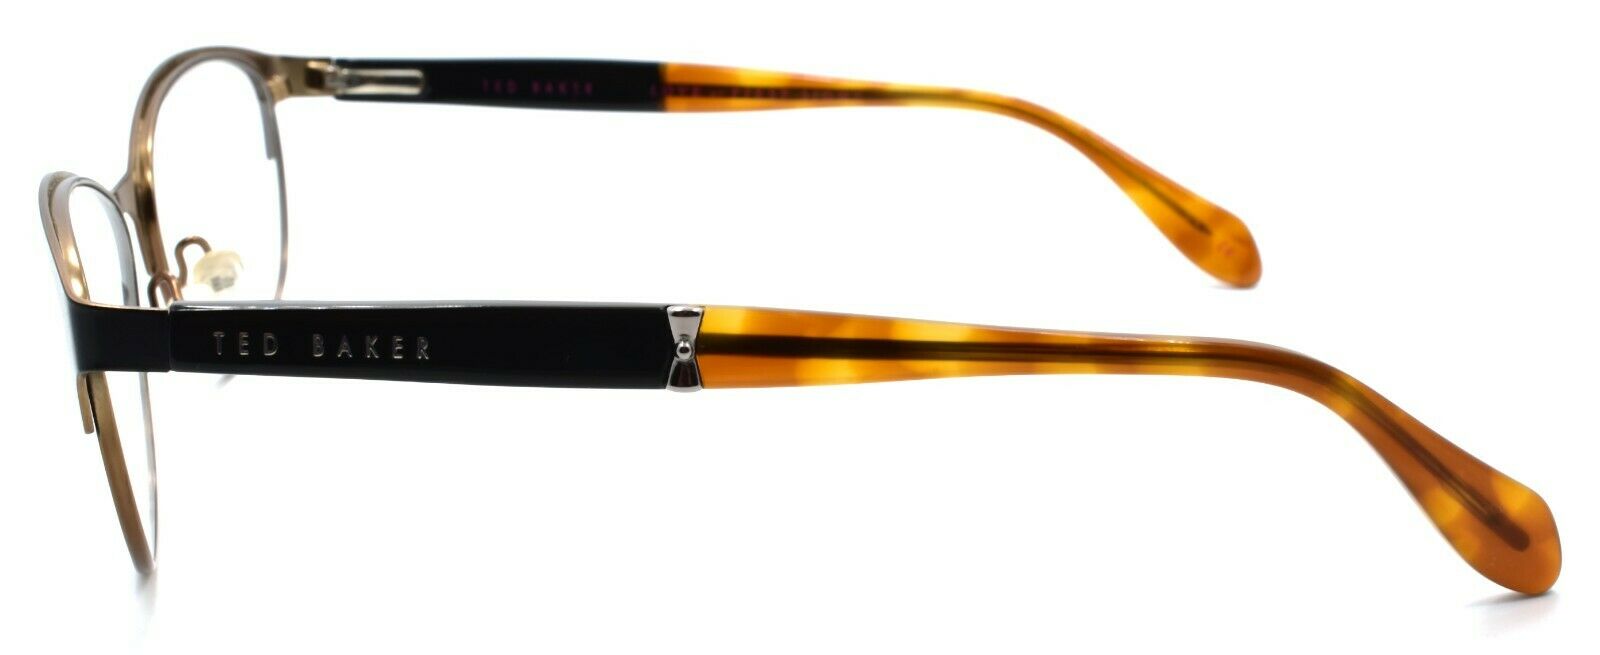 3-Ted Baker Denime 2210 001 Women's Eyeglasses Frames 52-15-135 Black / Brown-4894327056149-IKSpecs